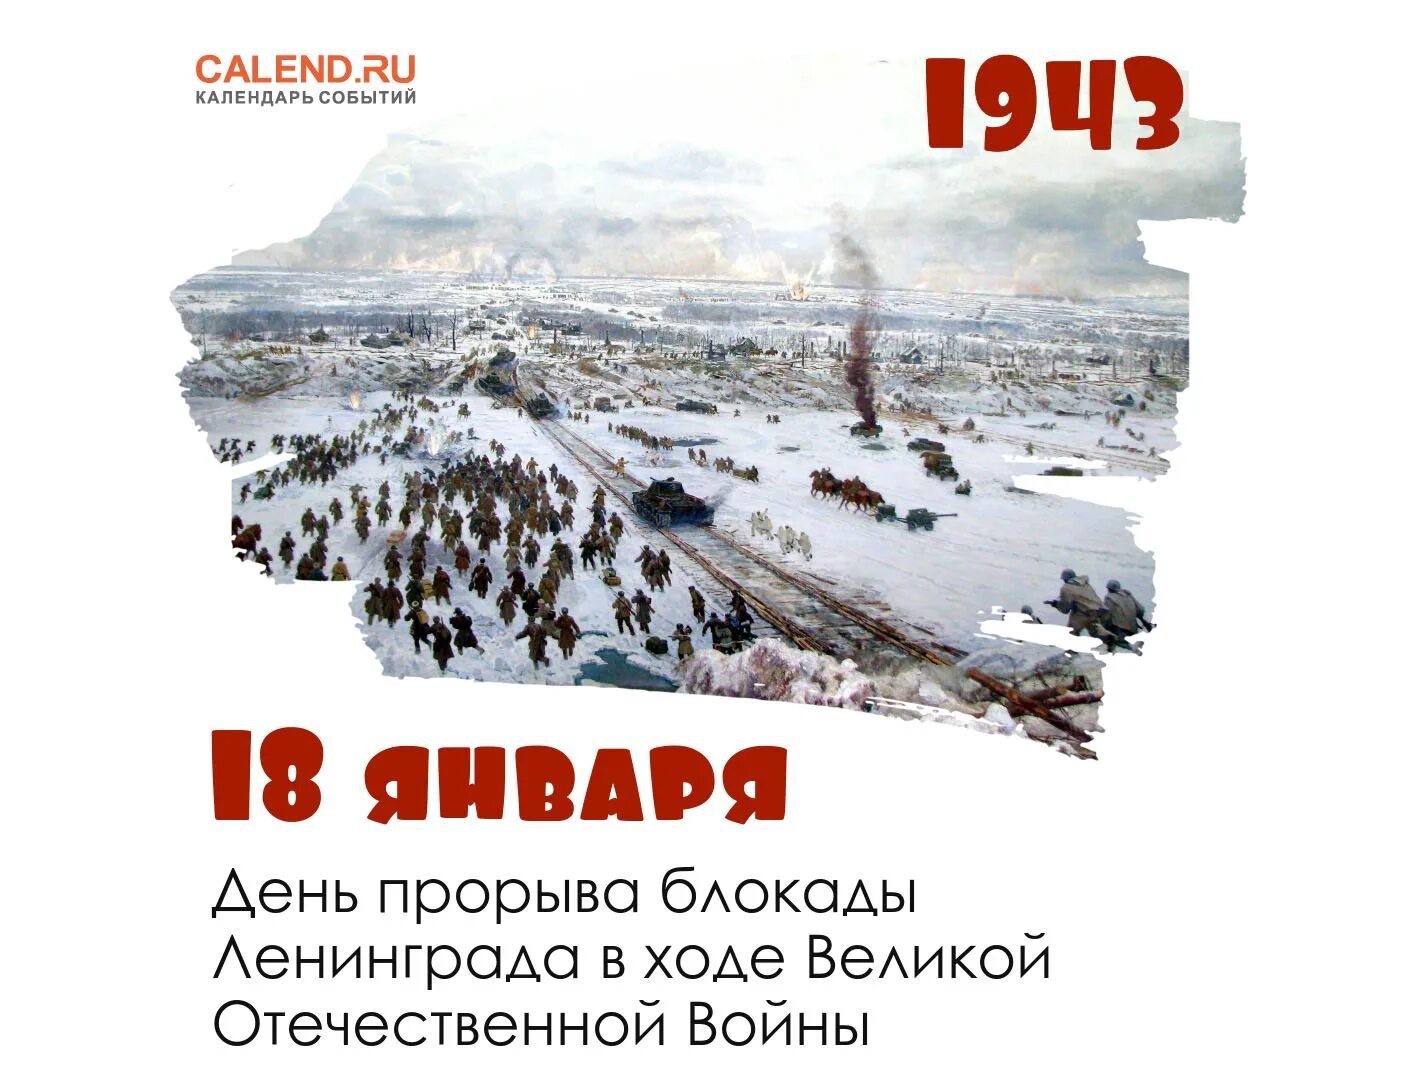 18 ноября открытки. Прорыв блокады Ленинграда 18 января 1943 года. 18 Января блокада Ленинграда прорвана.